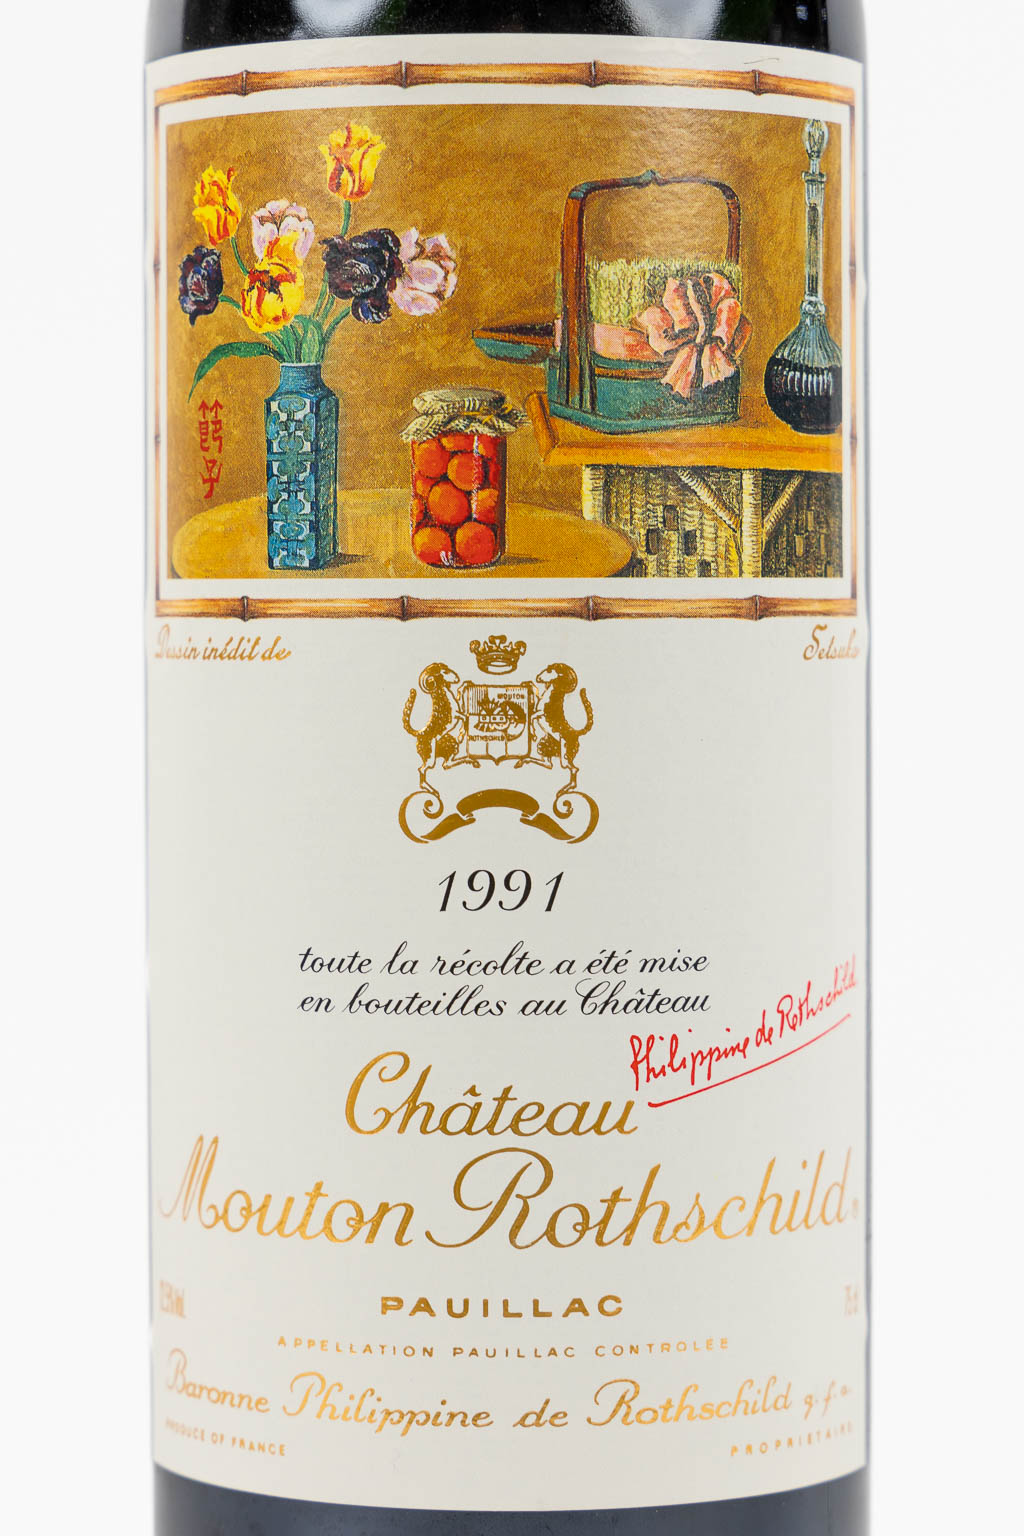 1991 Château Mouton Rothschild, Setsuko, 2 flessen. 